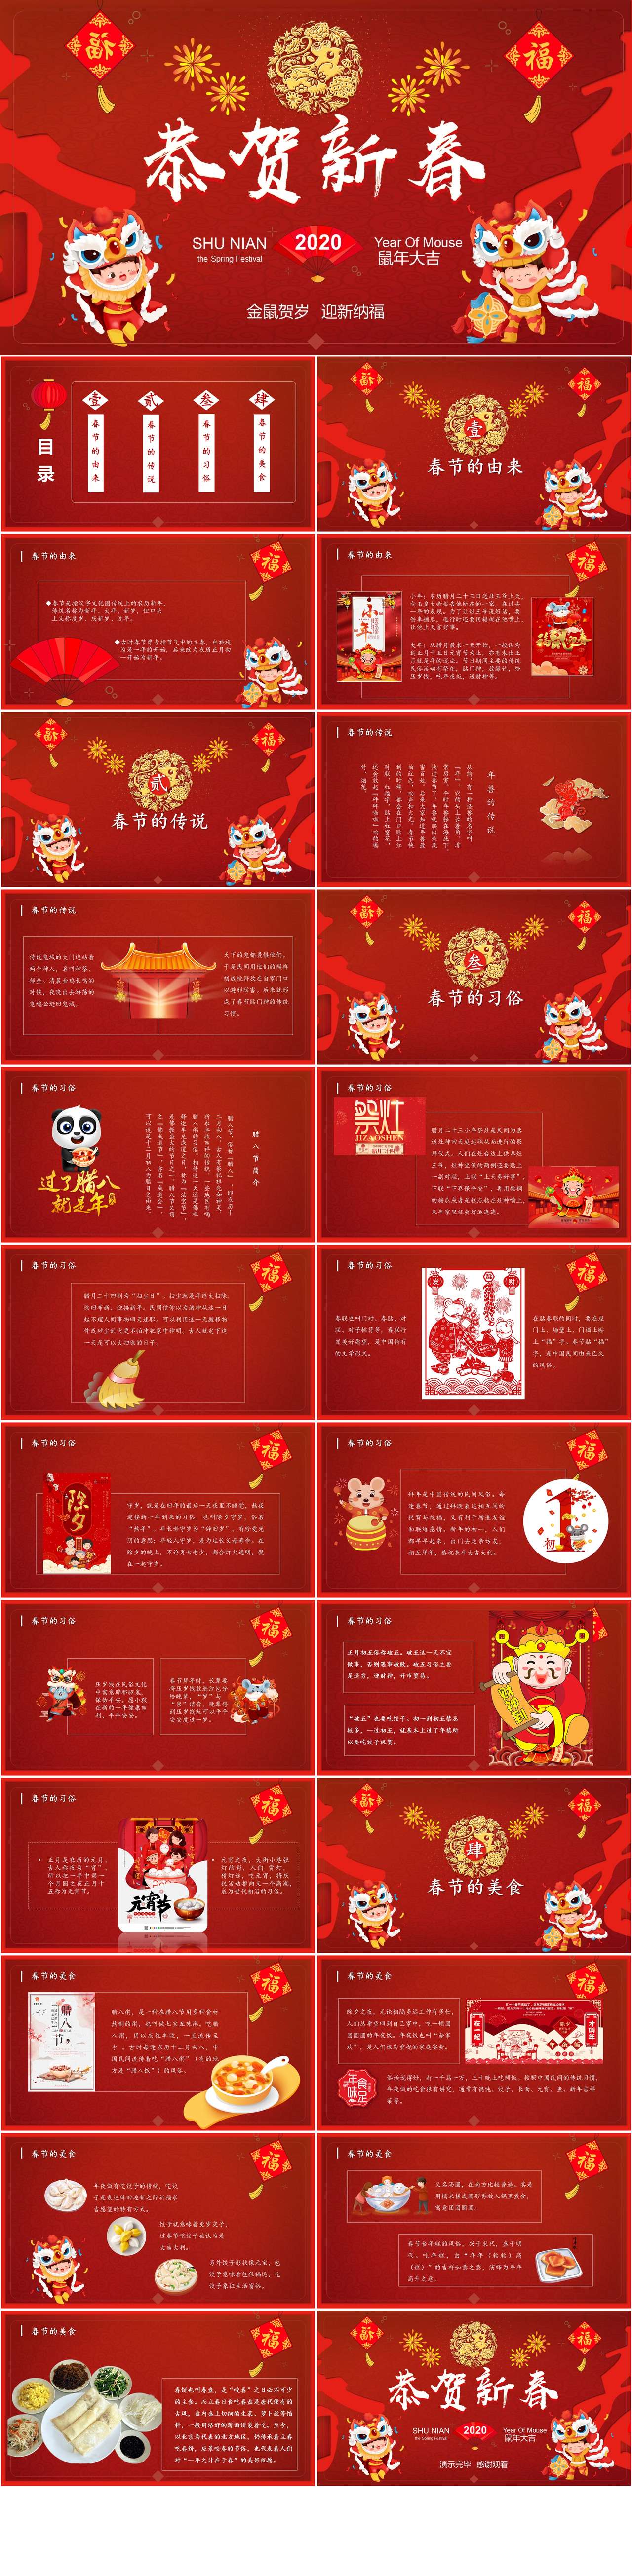 鼠年春节节日及美食介绍主题班会PPT模板